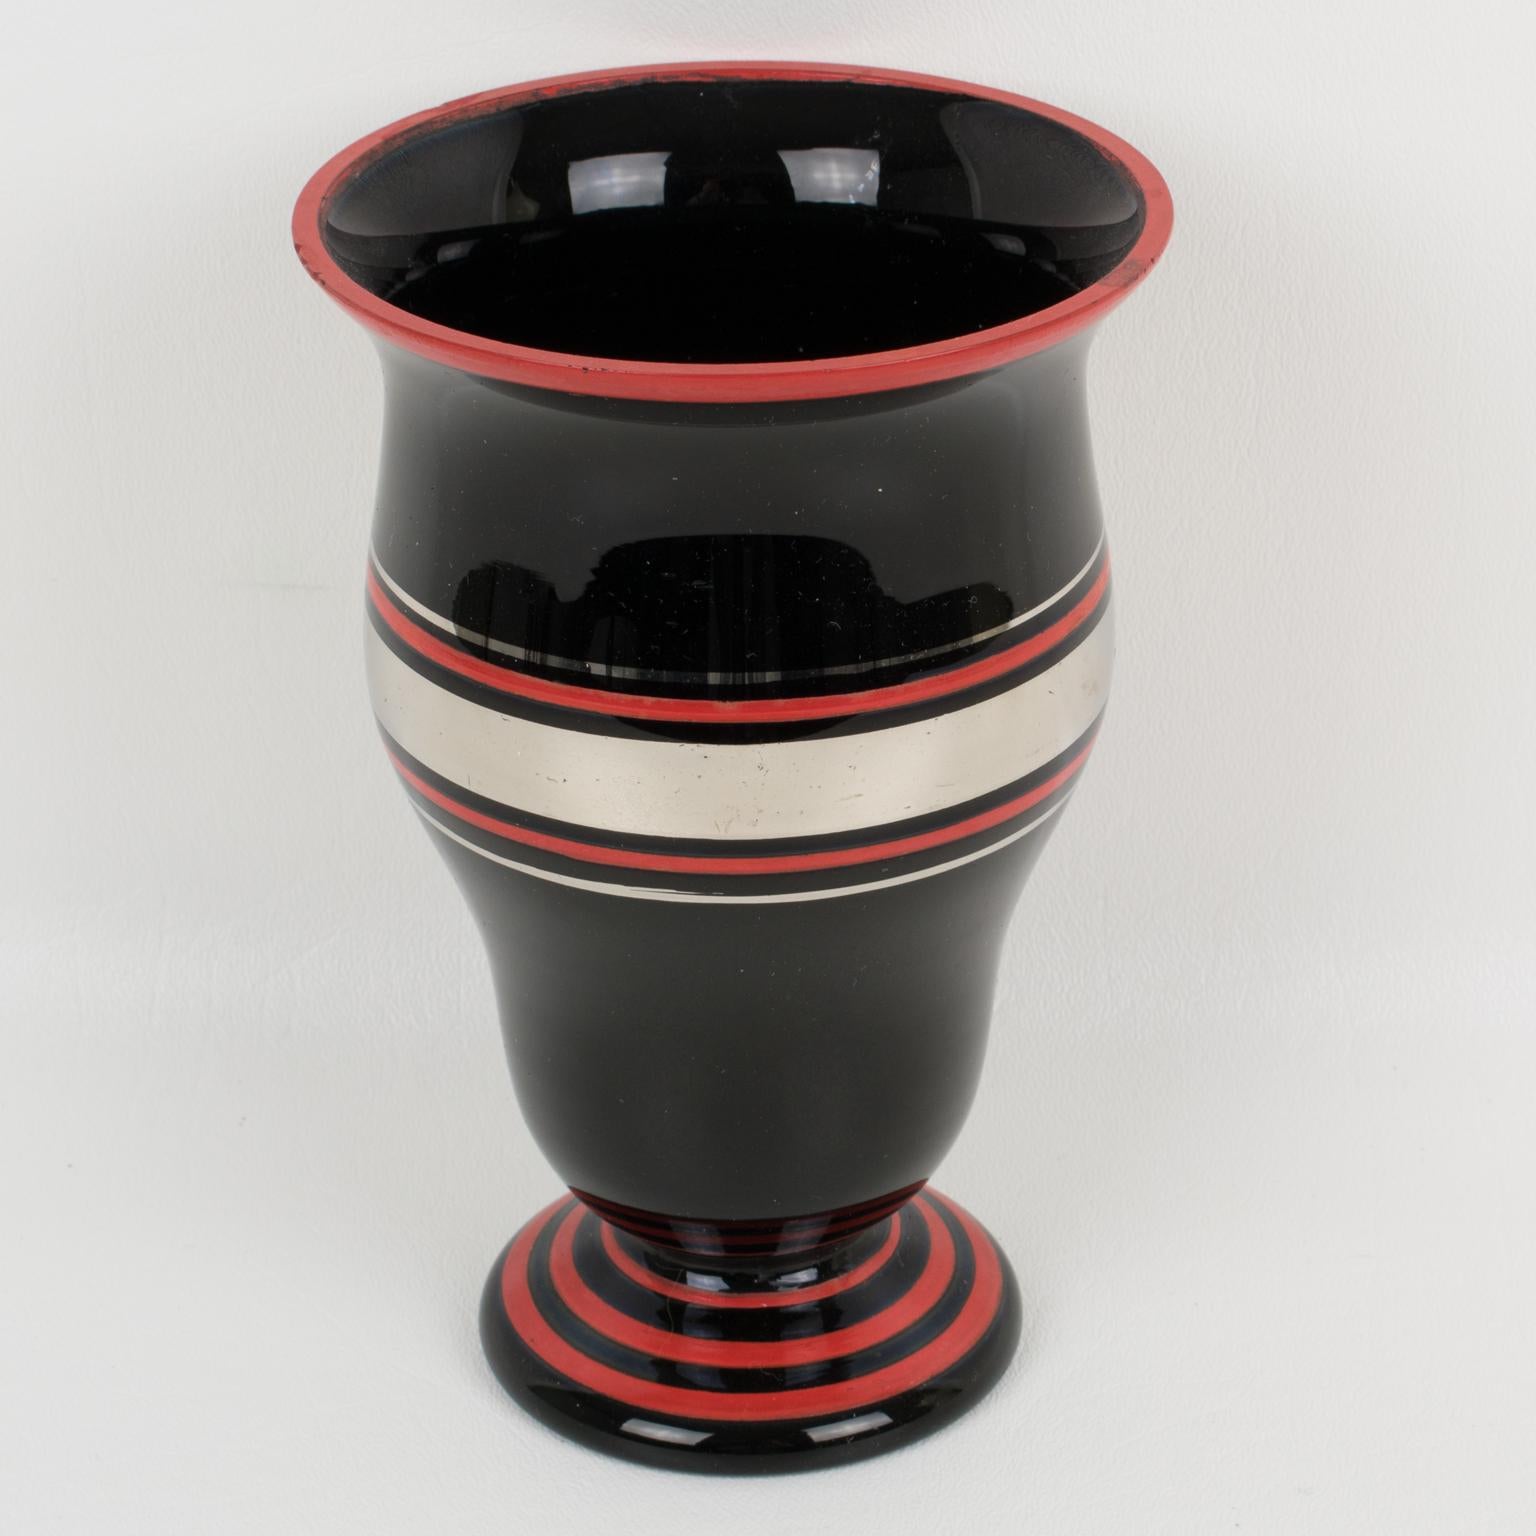 Ce joli vase en verre noir Art déco français des années 1930 est décoré d'un motif géométrique argenté et rouge sur son pourtour. Il n'y a pas de marque de fabricant visible.
Bon état d'origine avec quelques frottements et usures d'âge. Quelques